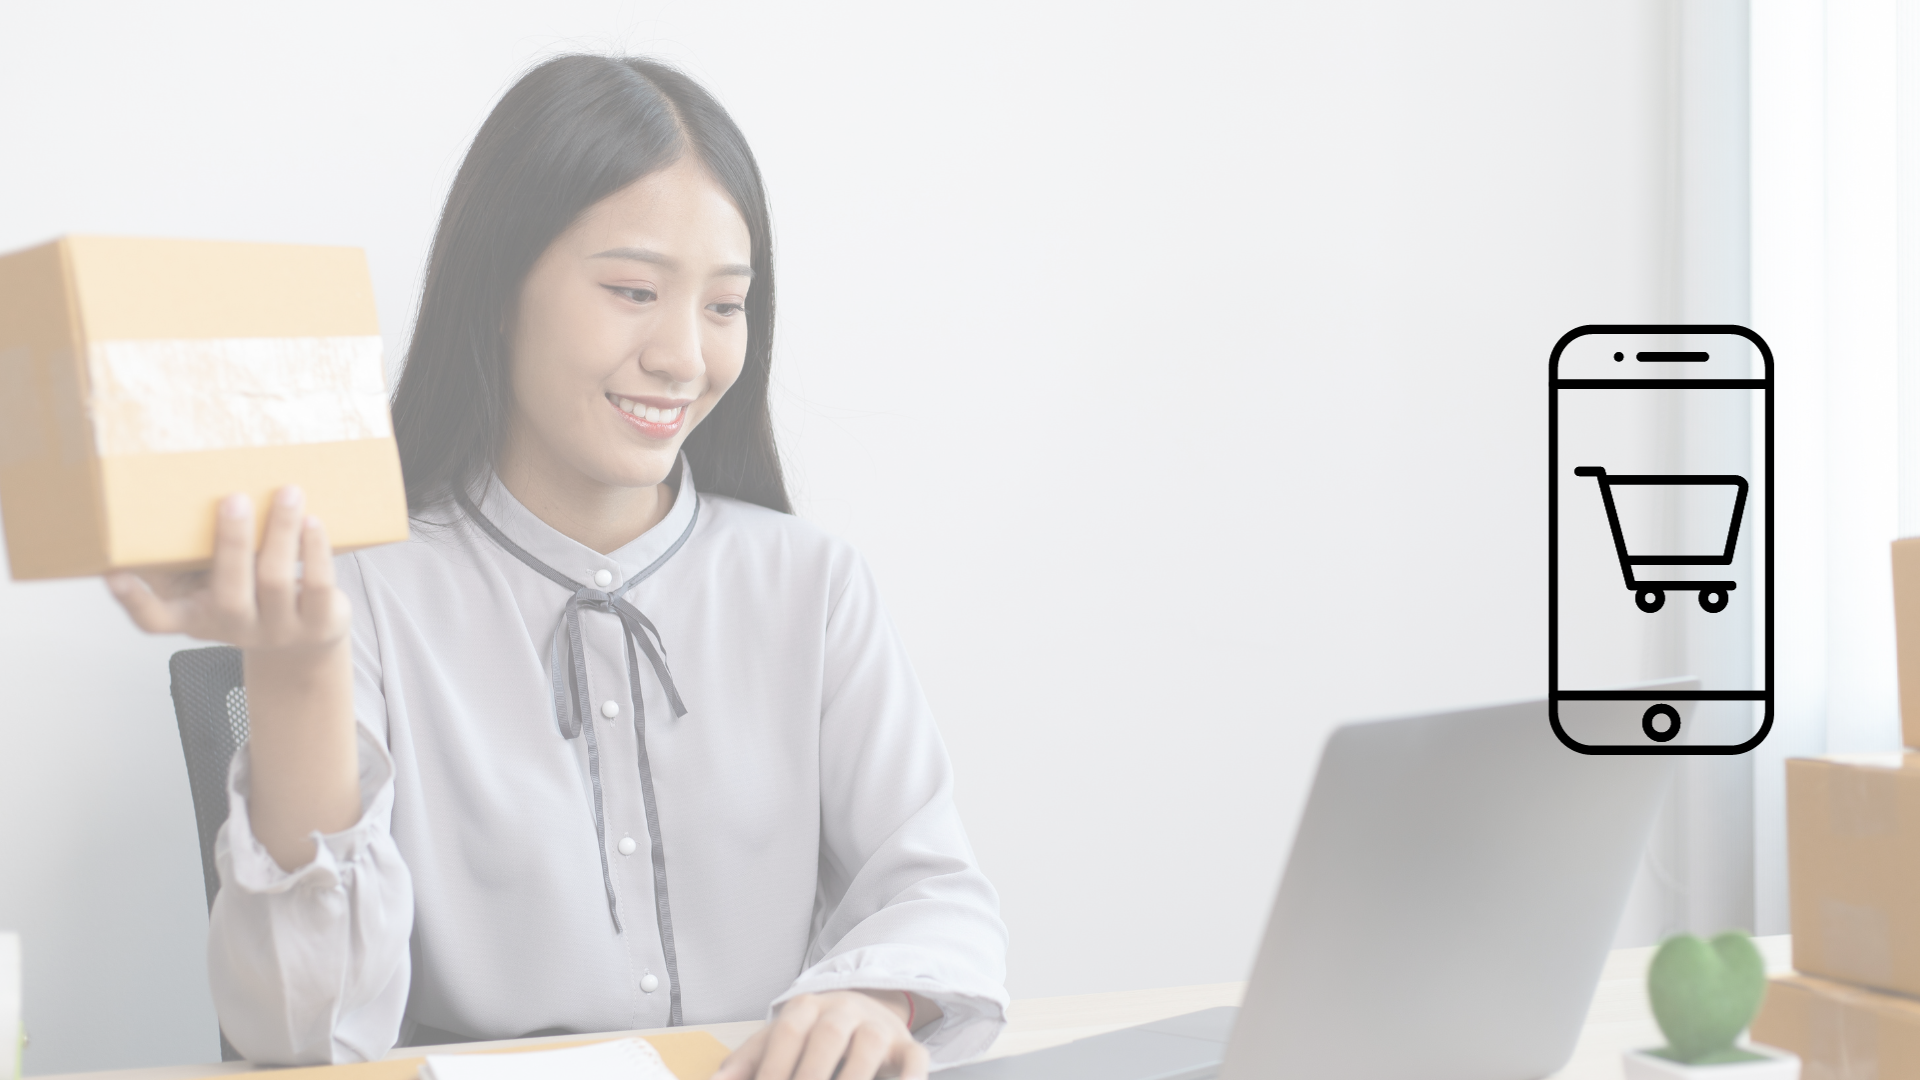 Mujer emprendedora mirando hacia su laptop sonriente con un envio de producto en la mano